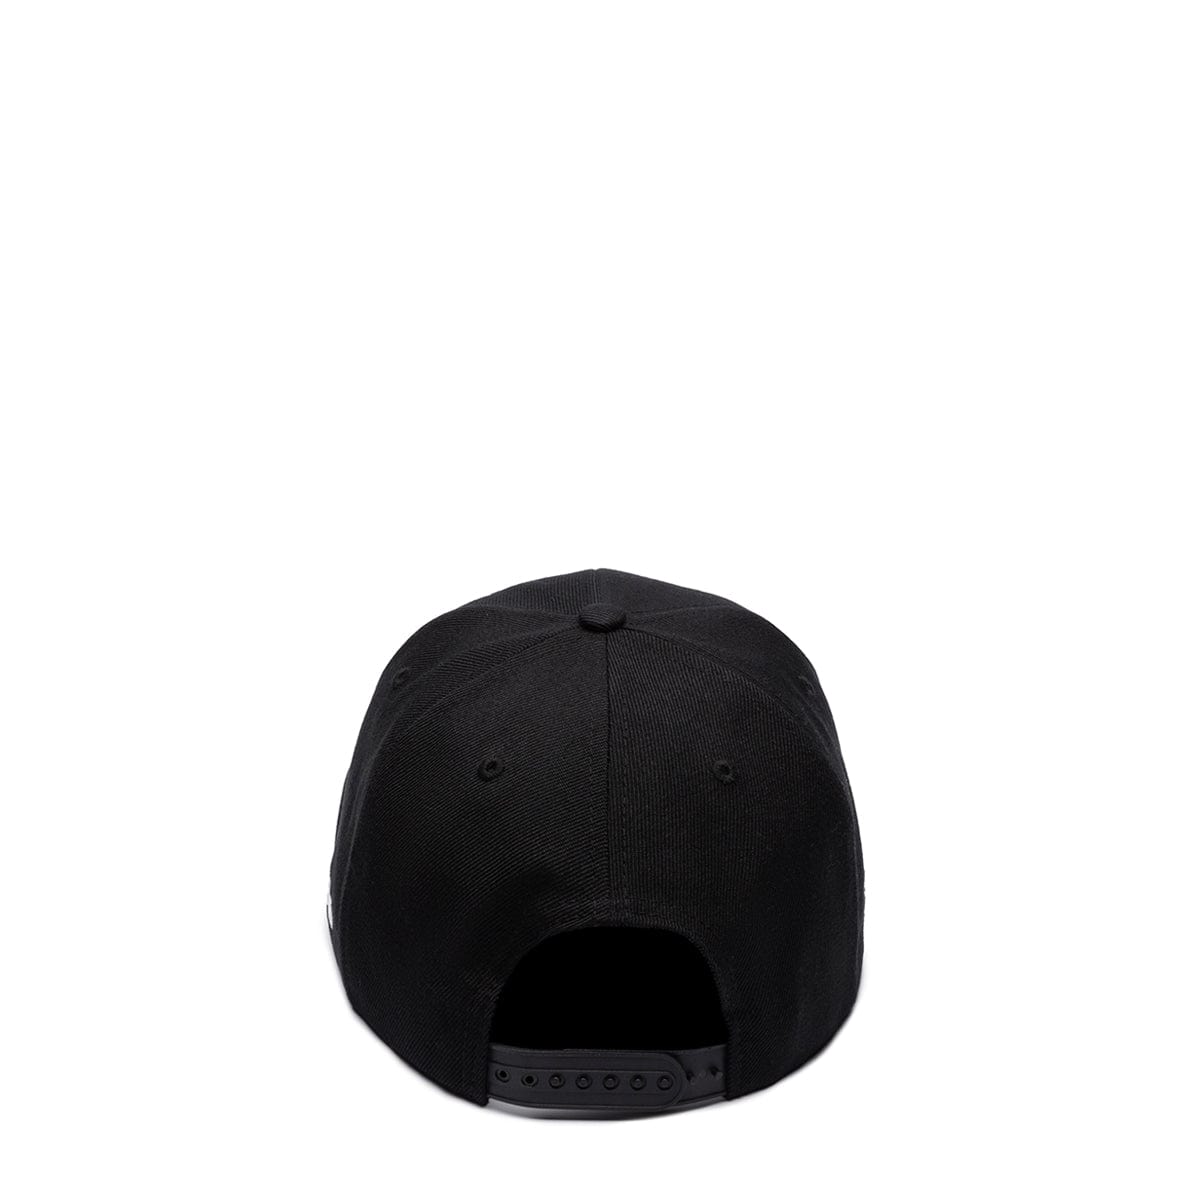 Marketplace Headwear BLACK / O/S BAN LOS ANGELES EXHIBIT HAT